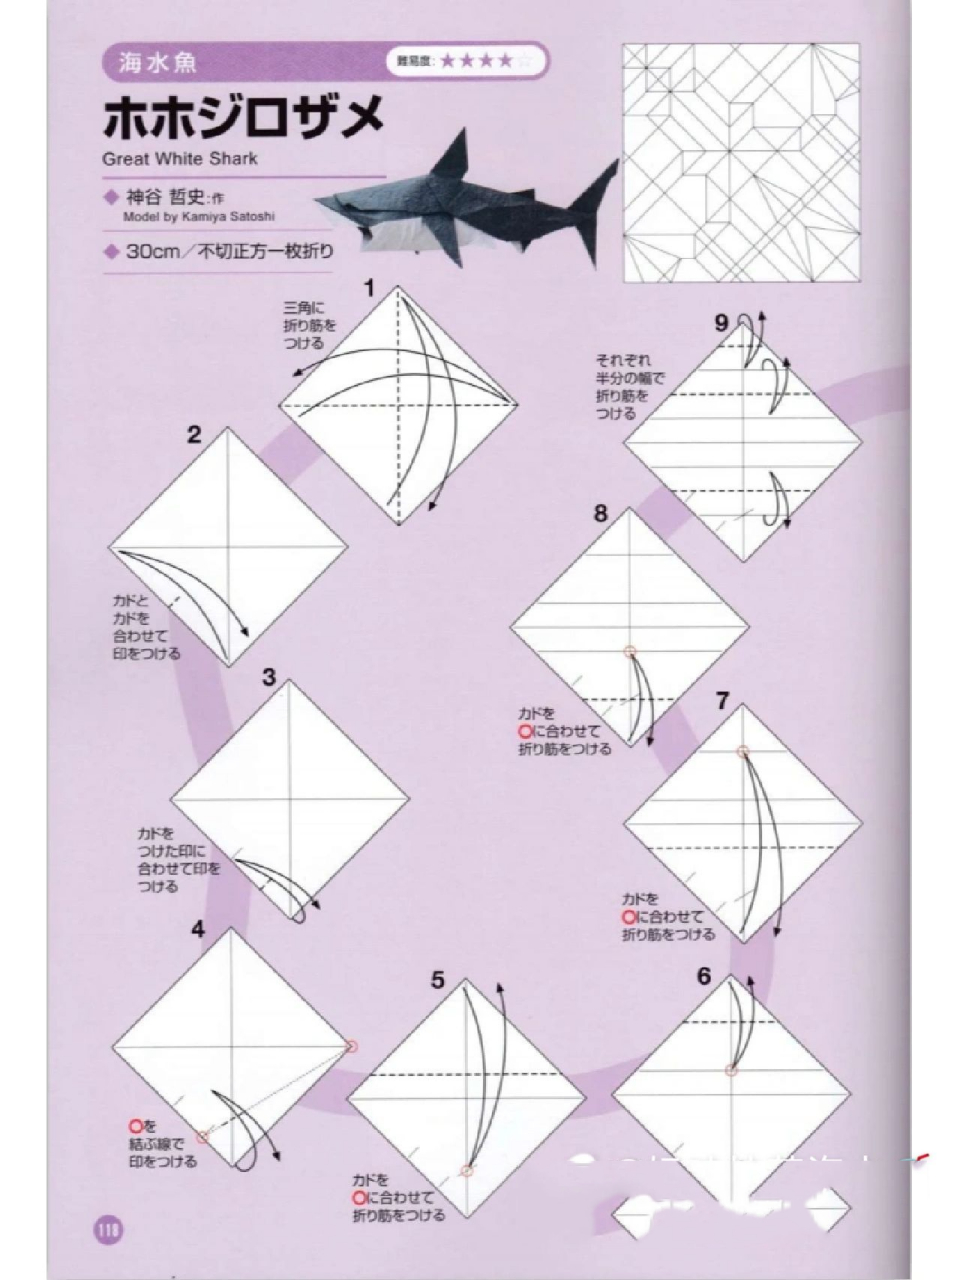 【折纸—折序】神谷哲史——鲨鱼(上)